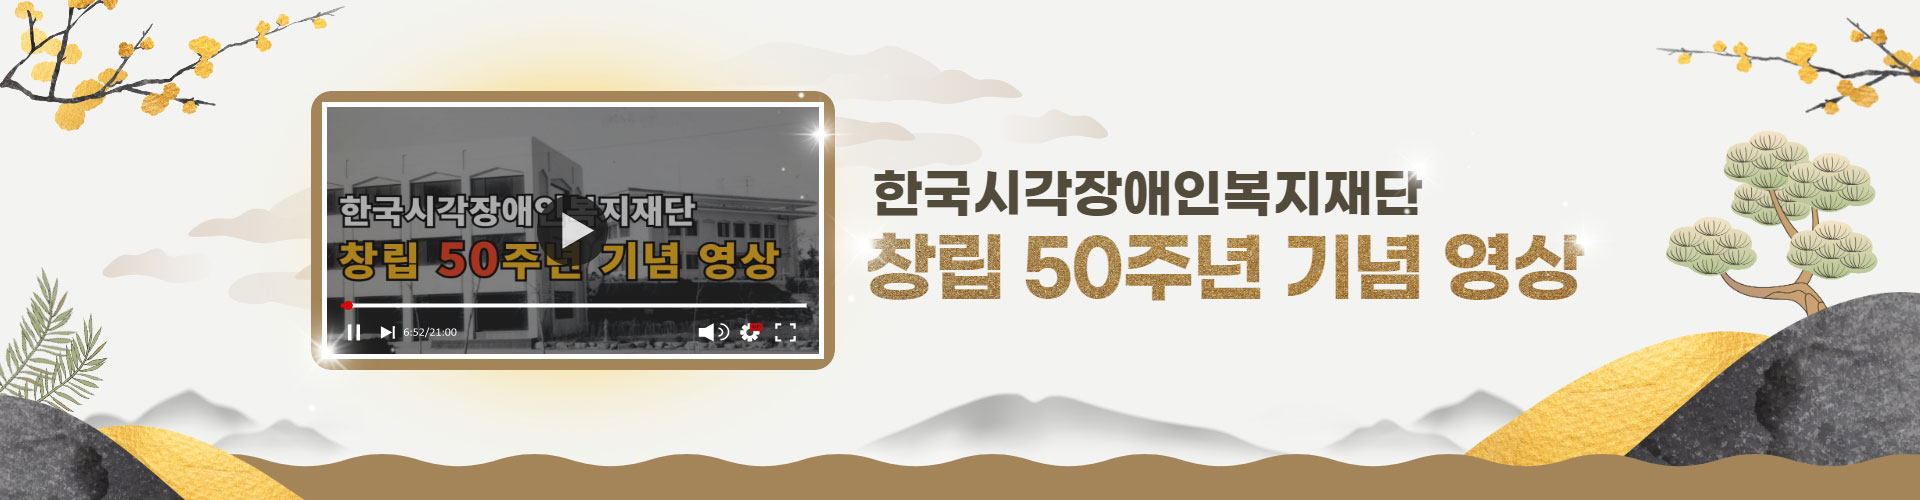 한국시각장애인복지재단 창립 50주년 기념 영상